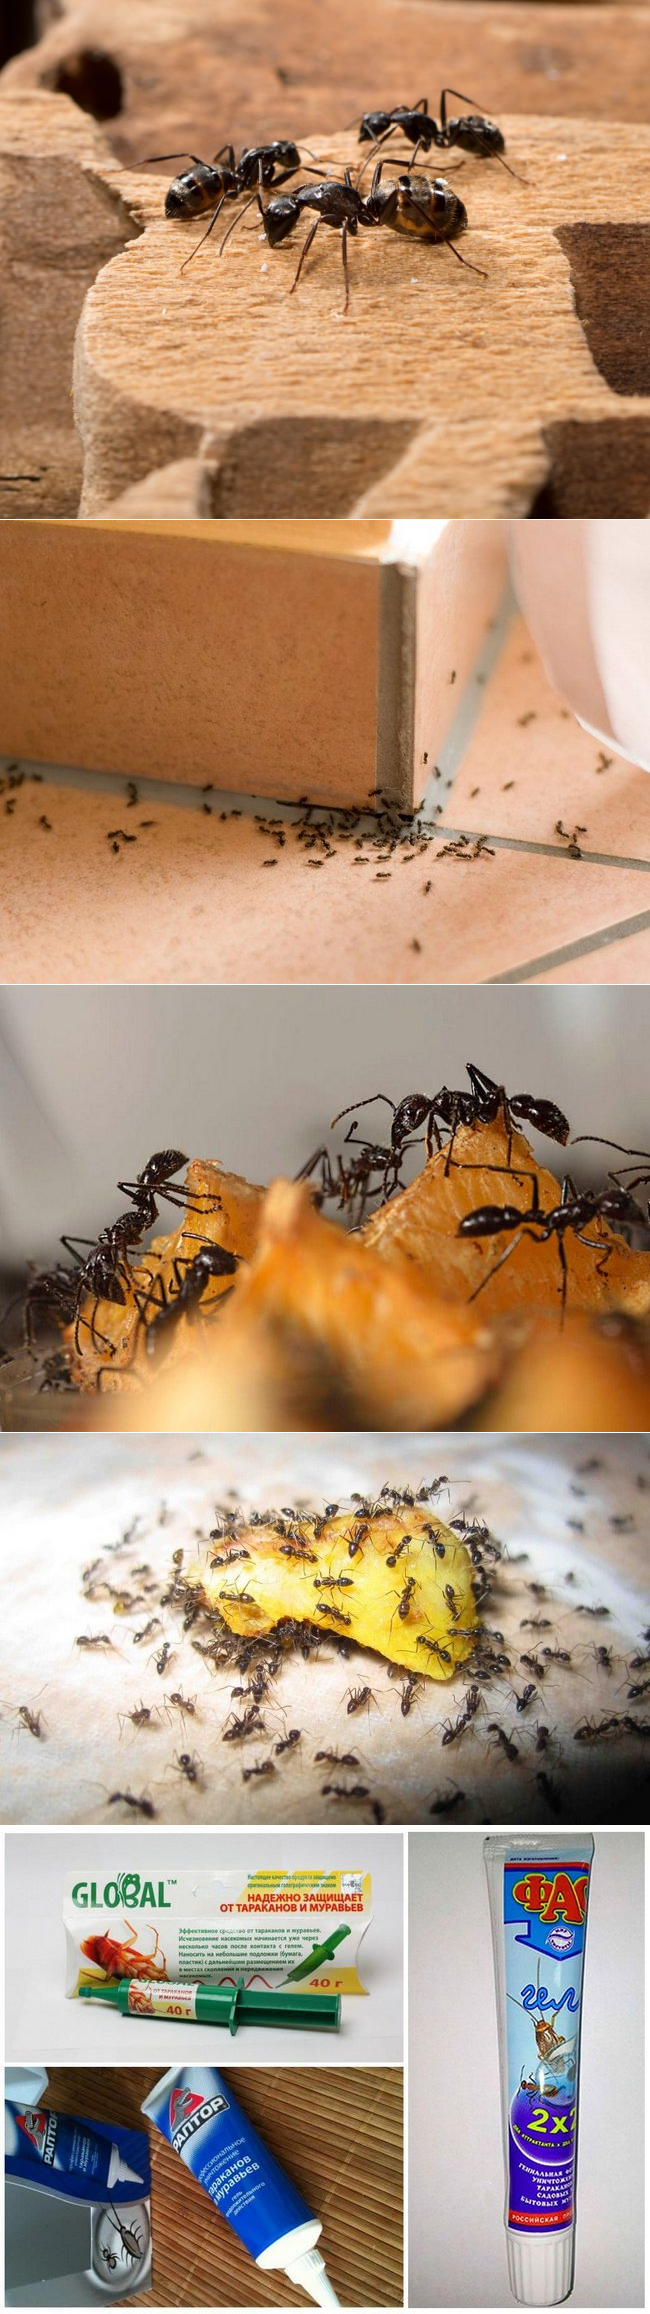 Как избавиться от муравьев на кухне — методы борьбы, лайхаки